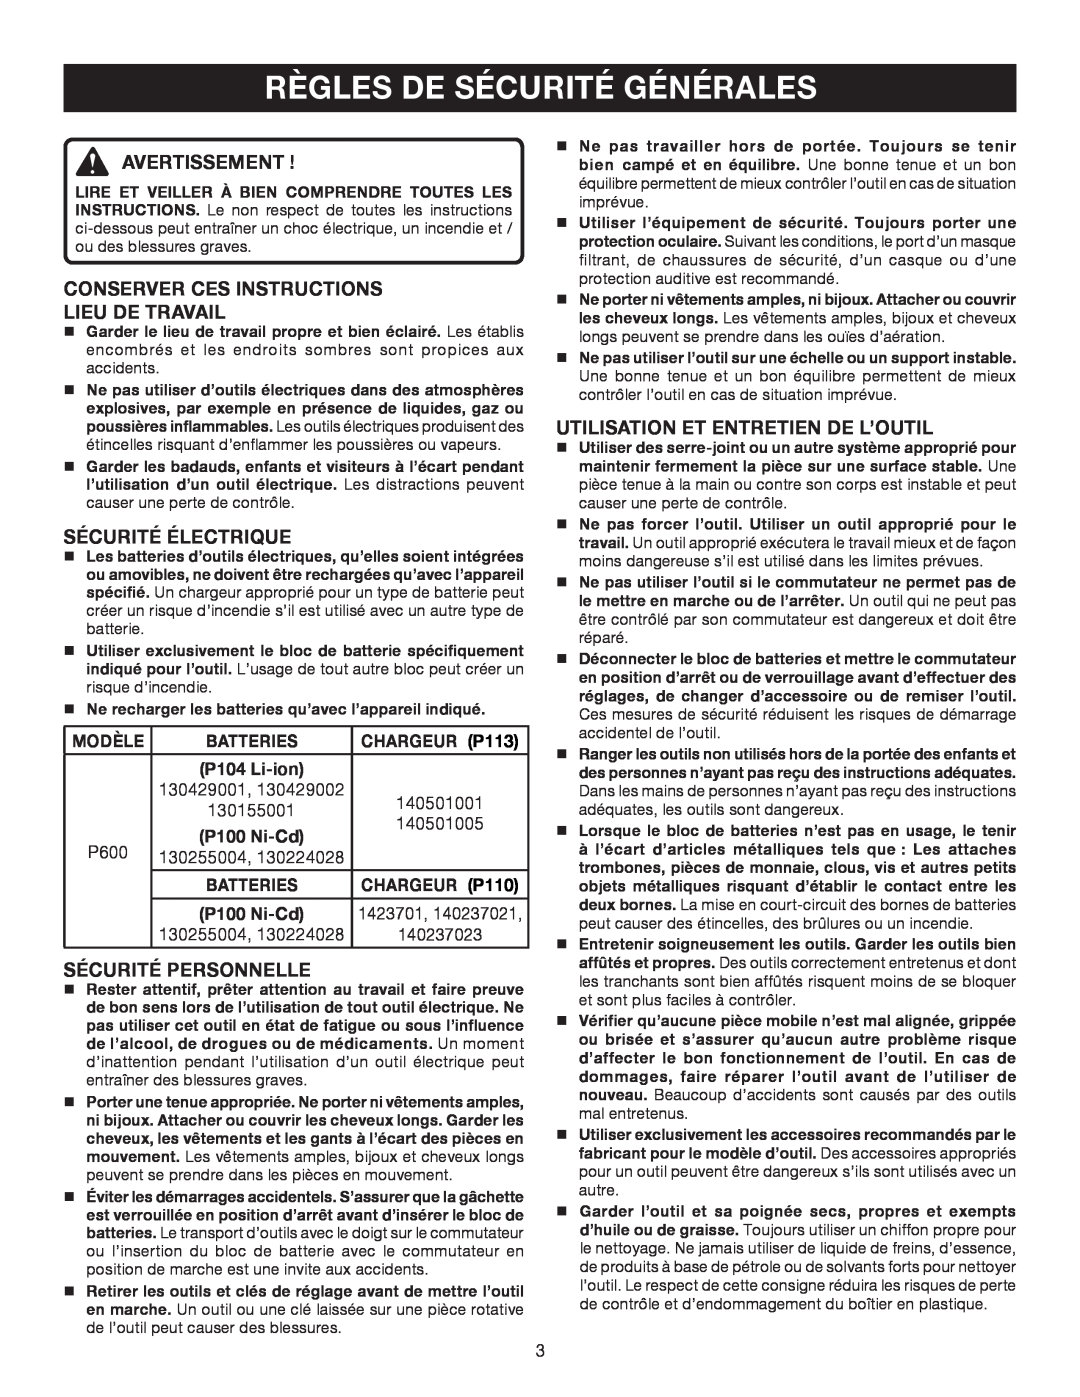 Ryobi P600 Règles De Sécurité Générales, Avertissement, Conserver Ces Instructions Lieu De Travail, Sécurité Électrique 